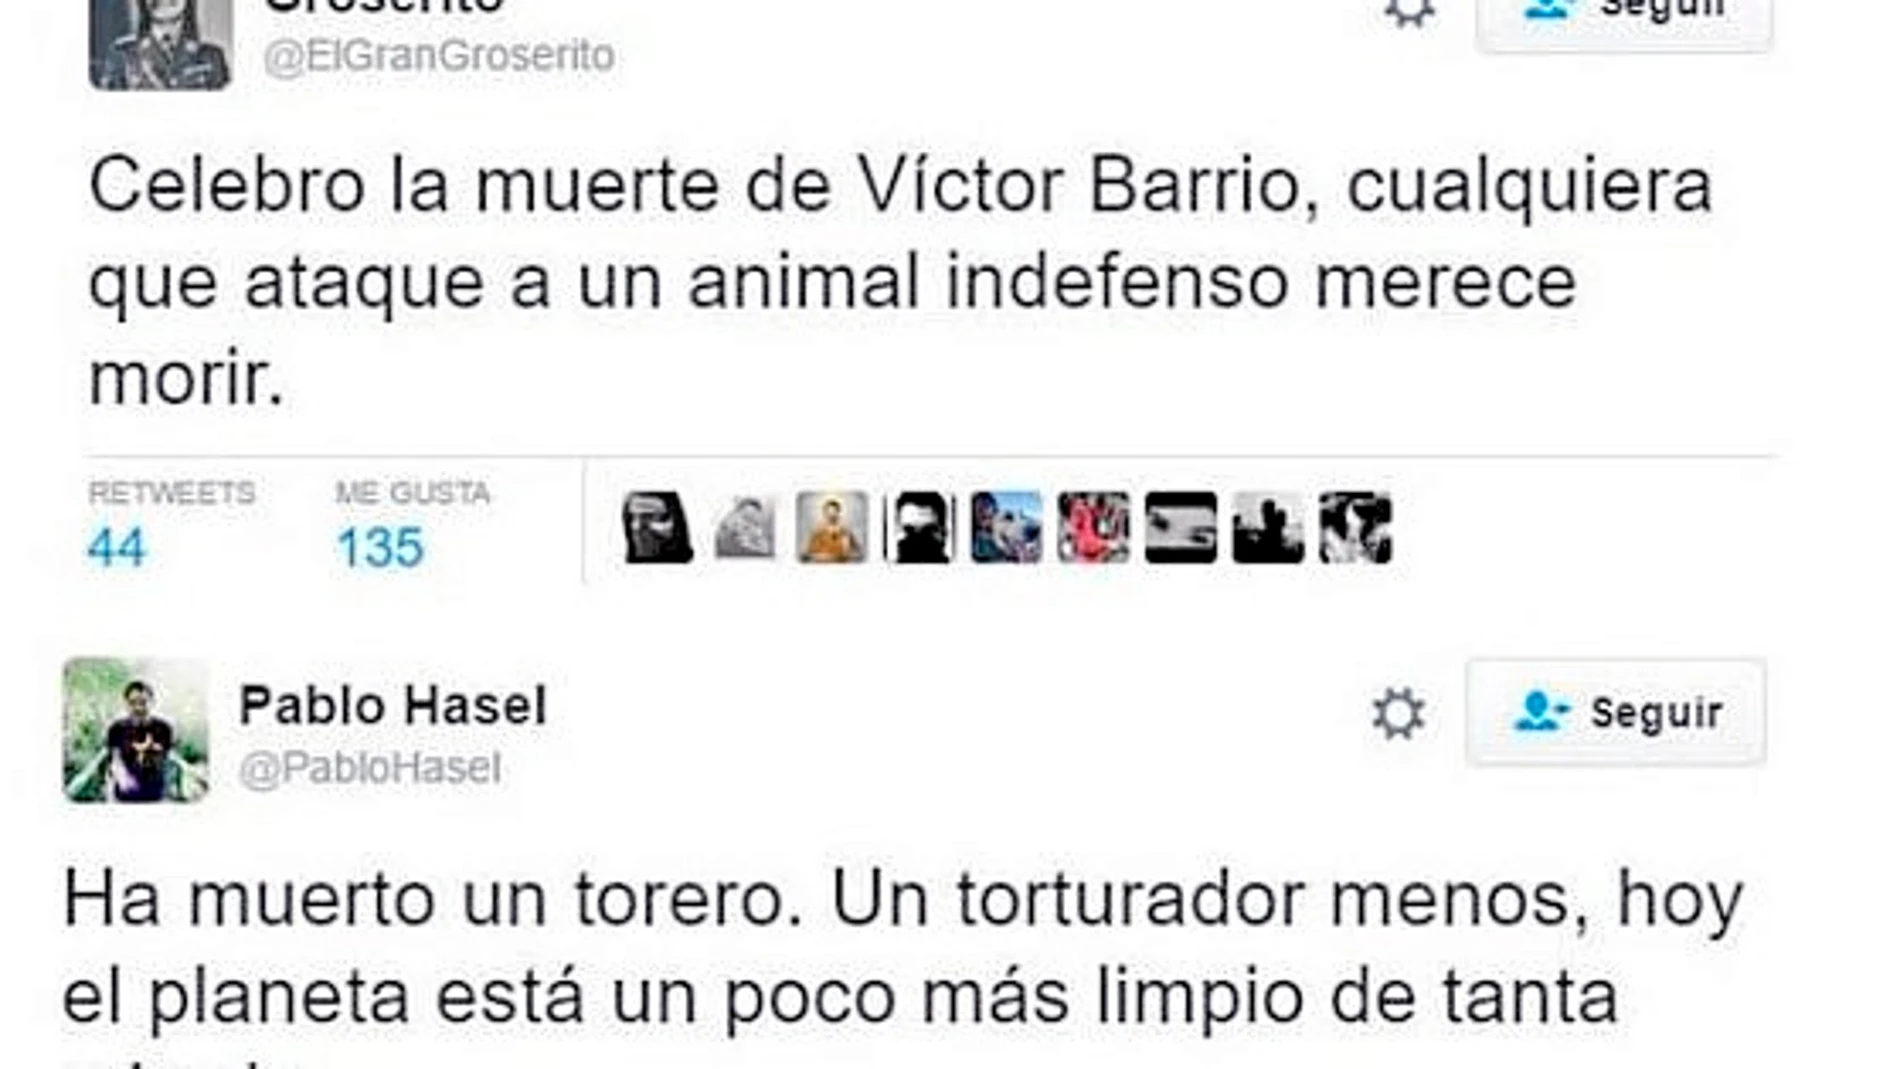 Algunos ejemplos de tuits que celebraban la muerte del torero Víctor Barrio